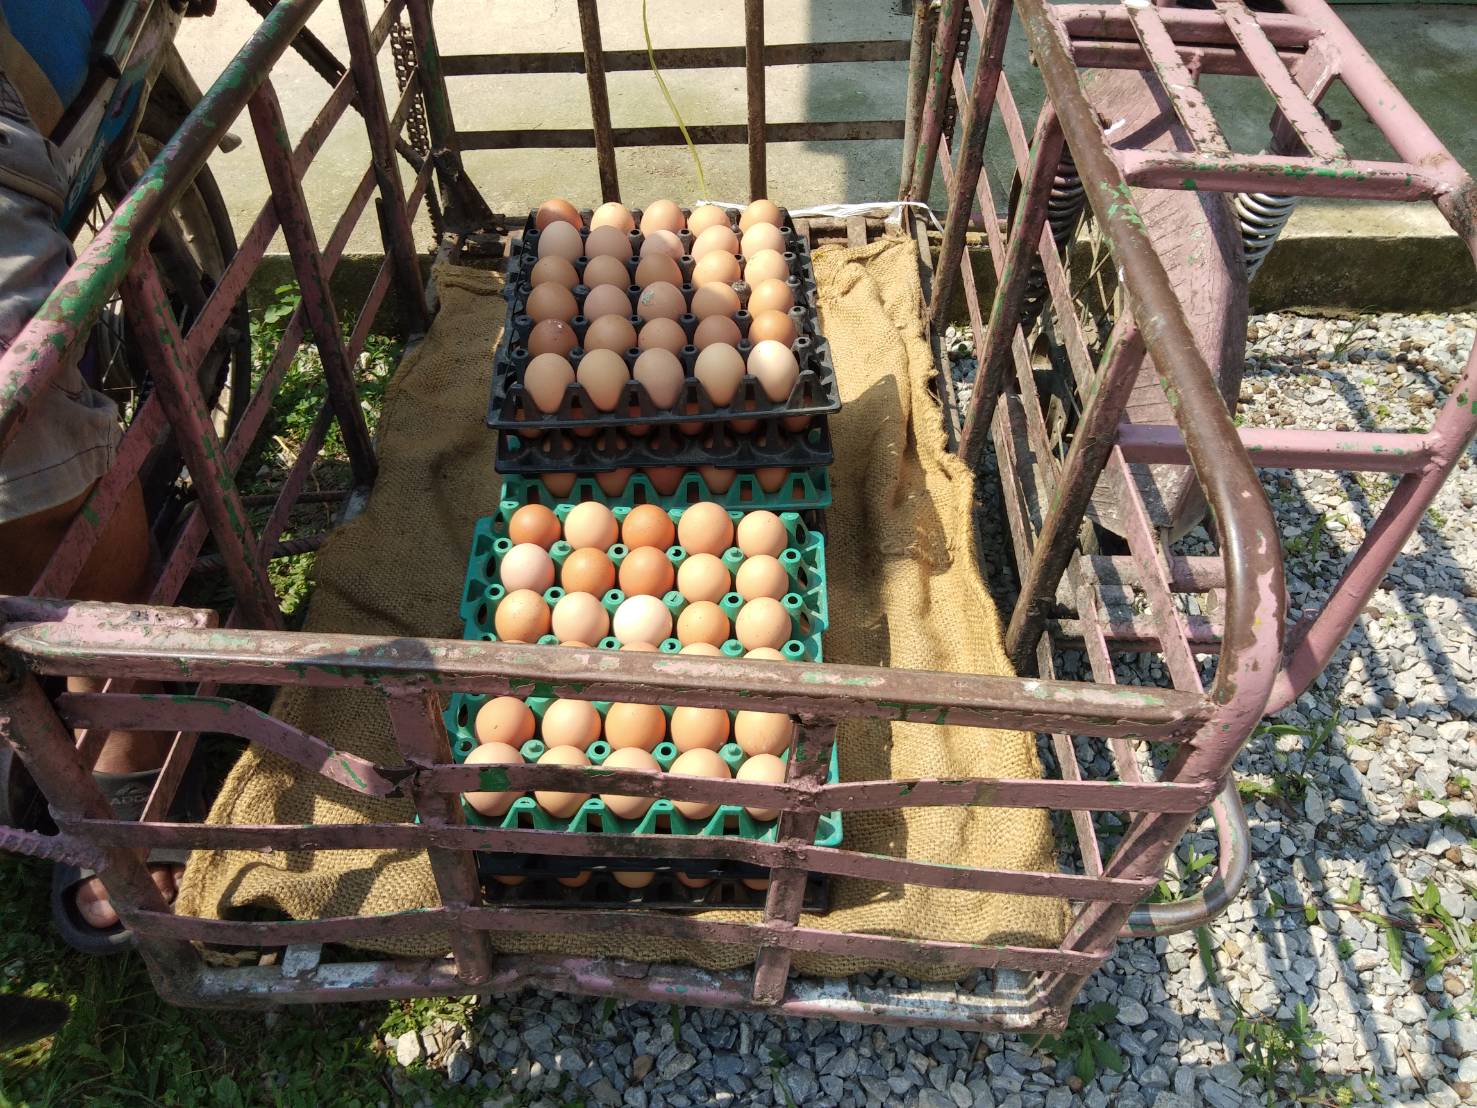 รร.เลี้ยงไก่ไข่เพื่ออาหารกลางวันนักเรียน สร้างความมั่นคงทางอาหาร คลังเสบียงหนุนชุมชน ฝ่าโควิด-19